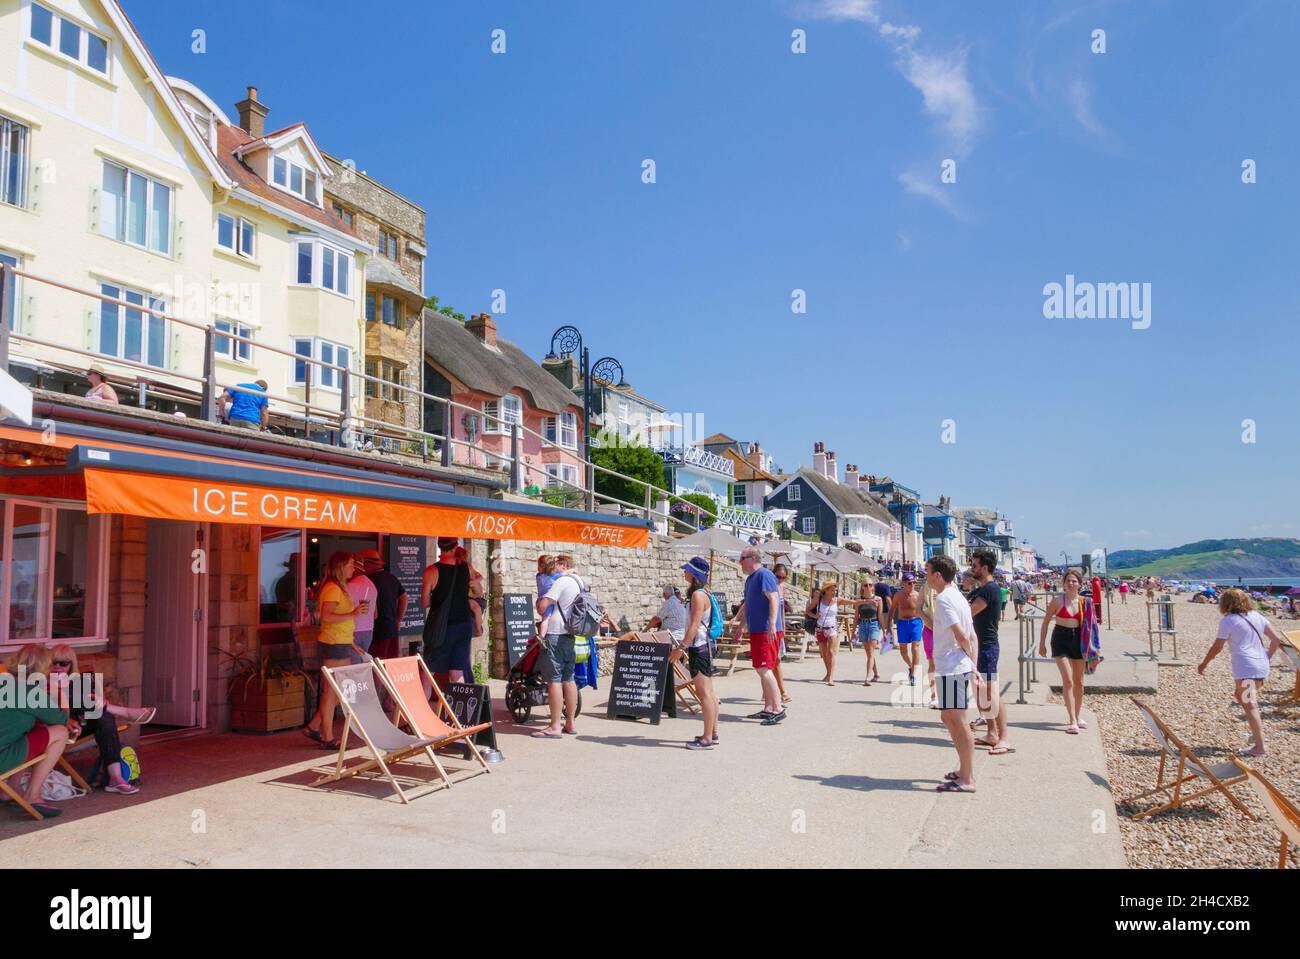 Les gens font la queue pour la glace dans un café de kiosque de glace sur le front de mer Marine Parade surplombant la plage de sable à Lyme Regis Dorset Angleterre GB Europe Banque D'Images